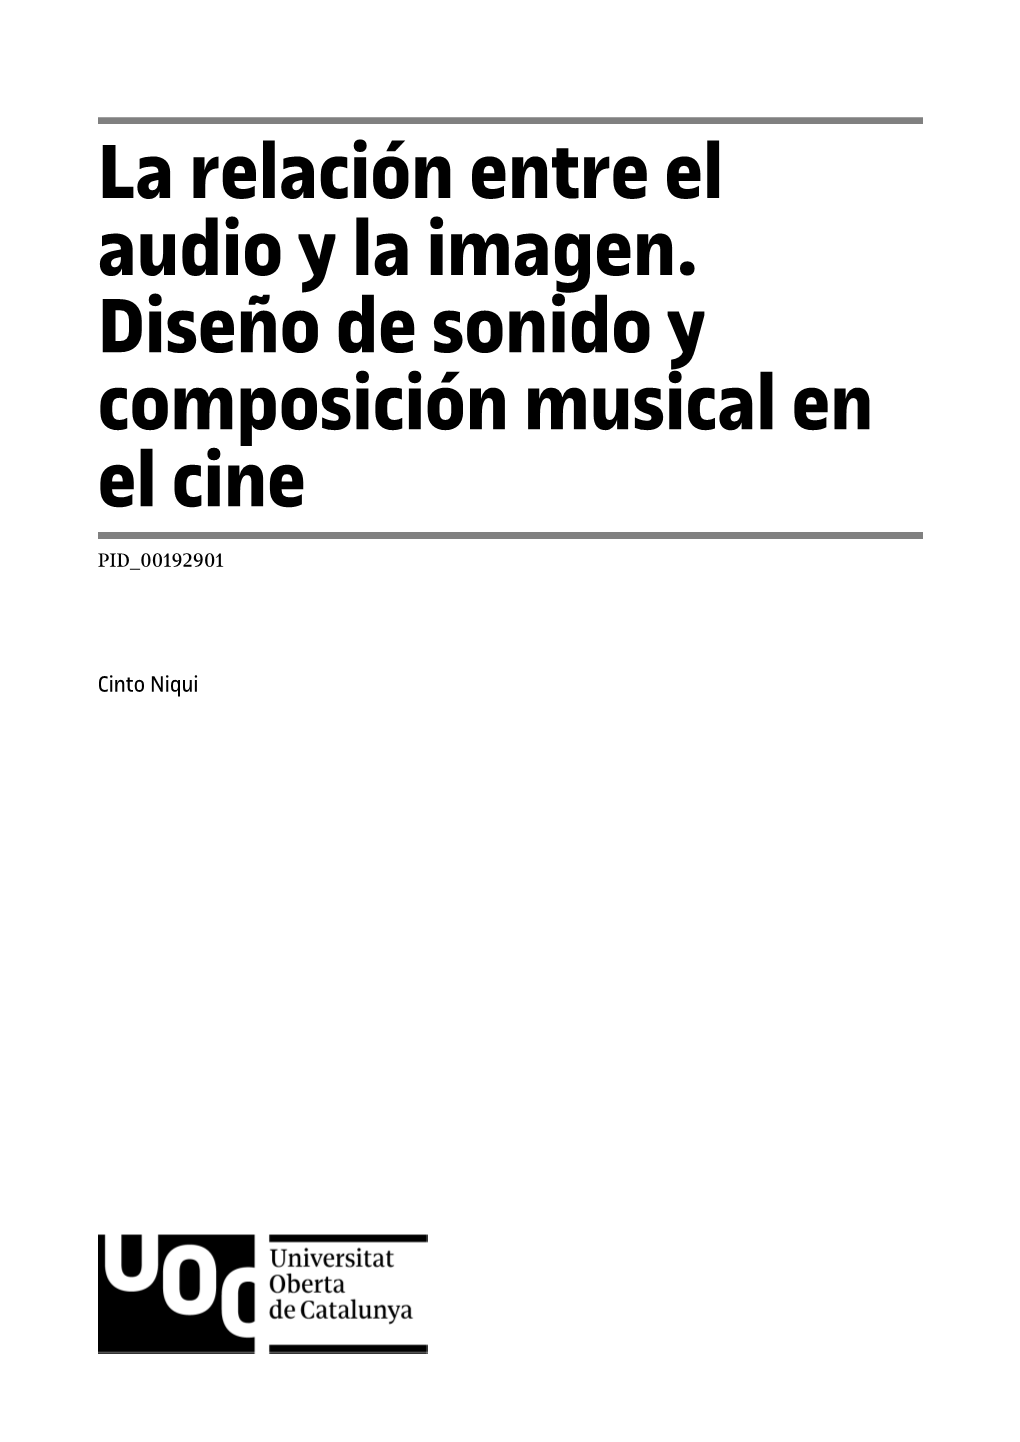 La Relación Entre El Audio Y La Imagen. Diseño De Sonido Y Composición Musical En El Cine